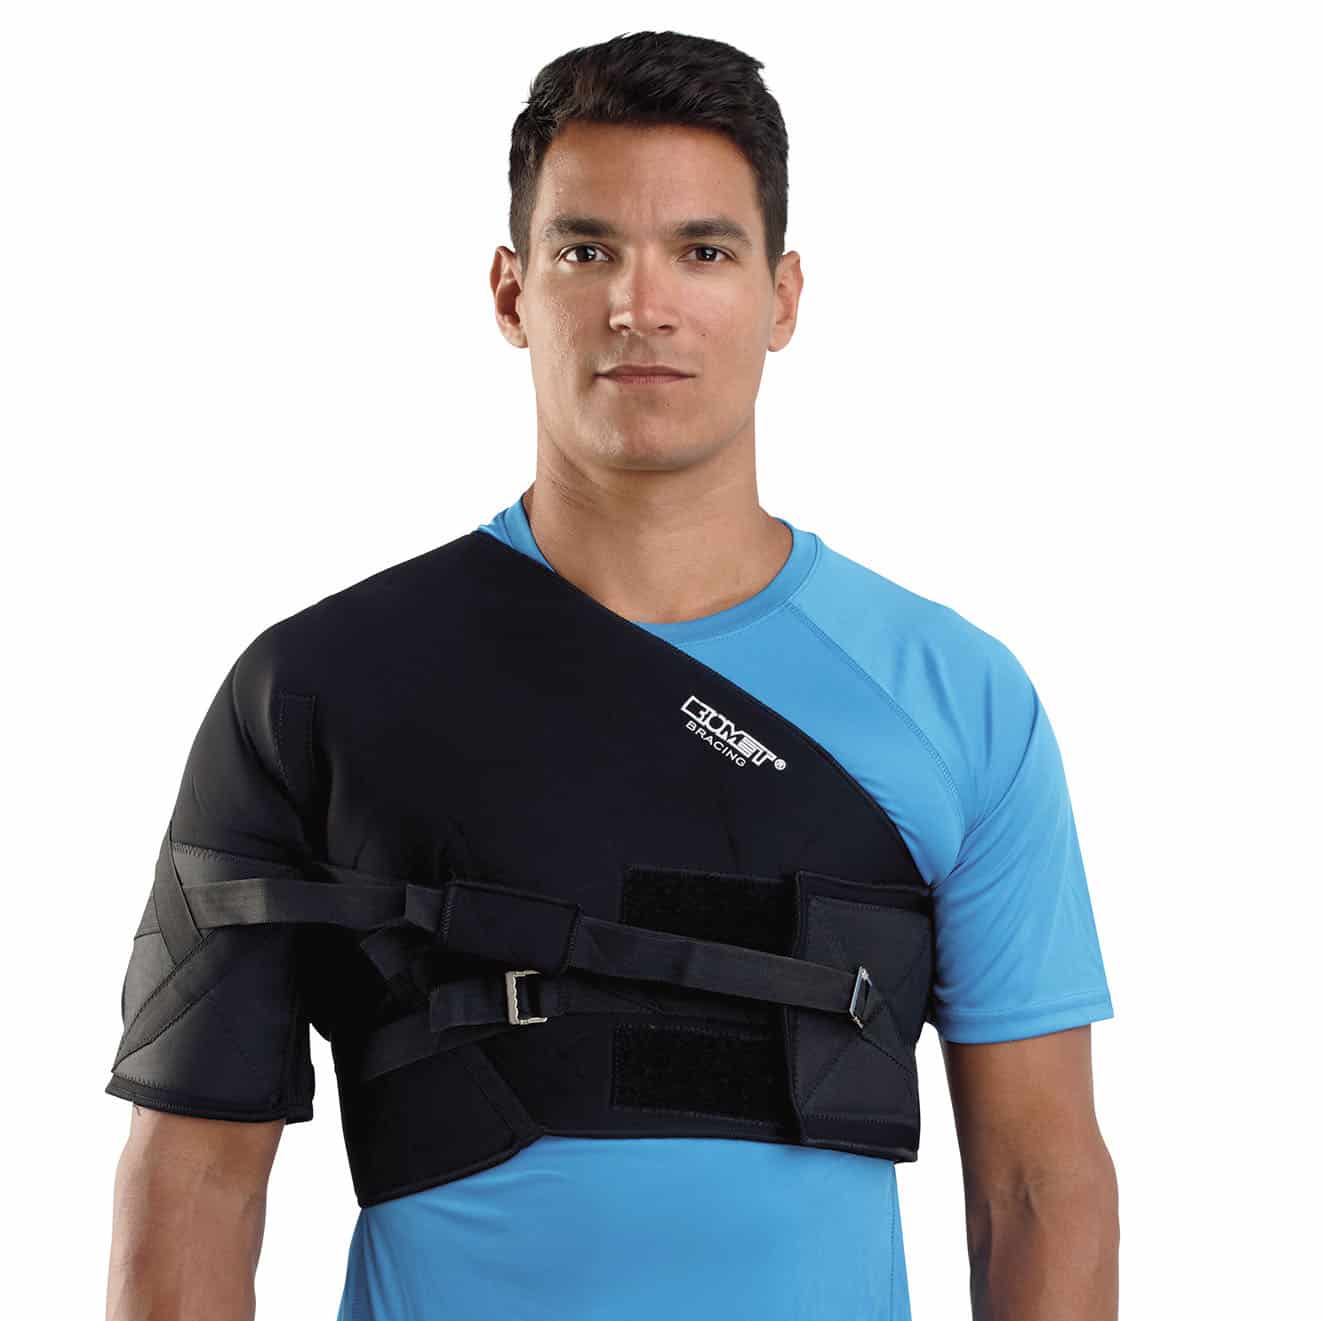 shoulder immobilizer